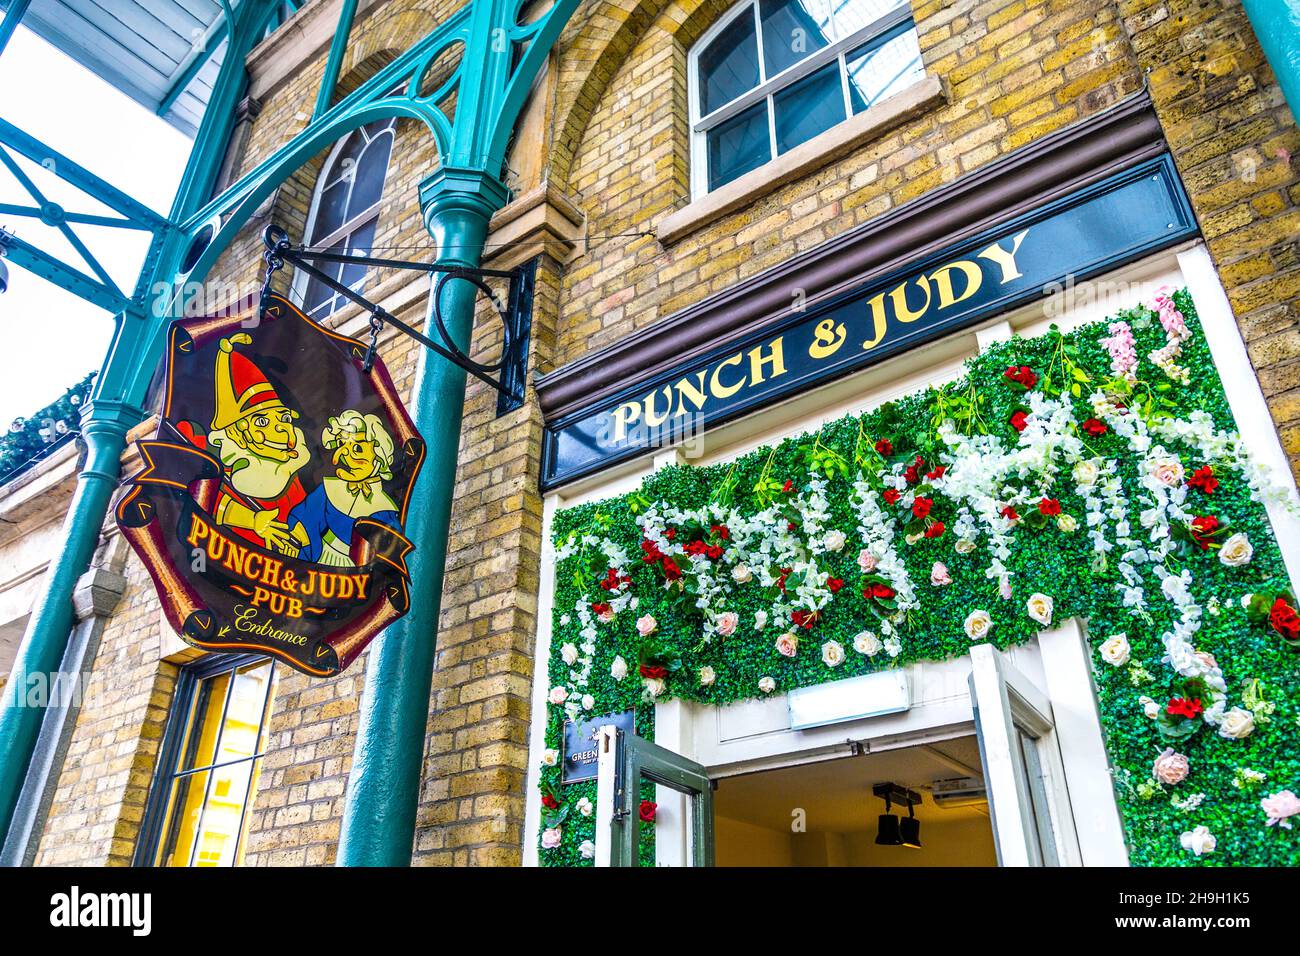 Esterno del pub Punch & Judy all'interno del mercato di Covent Garden, Londra, Regno Unito Foto Stock